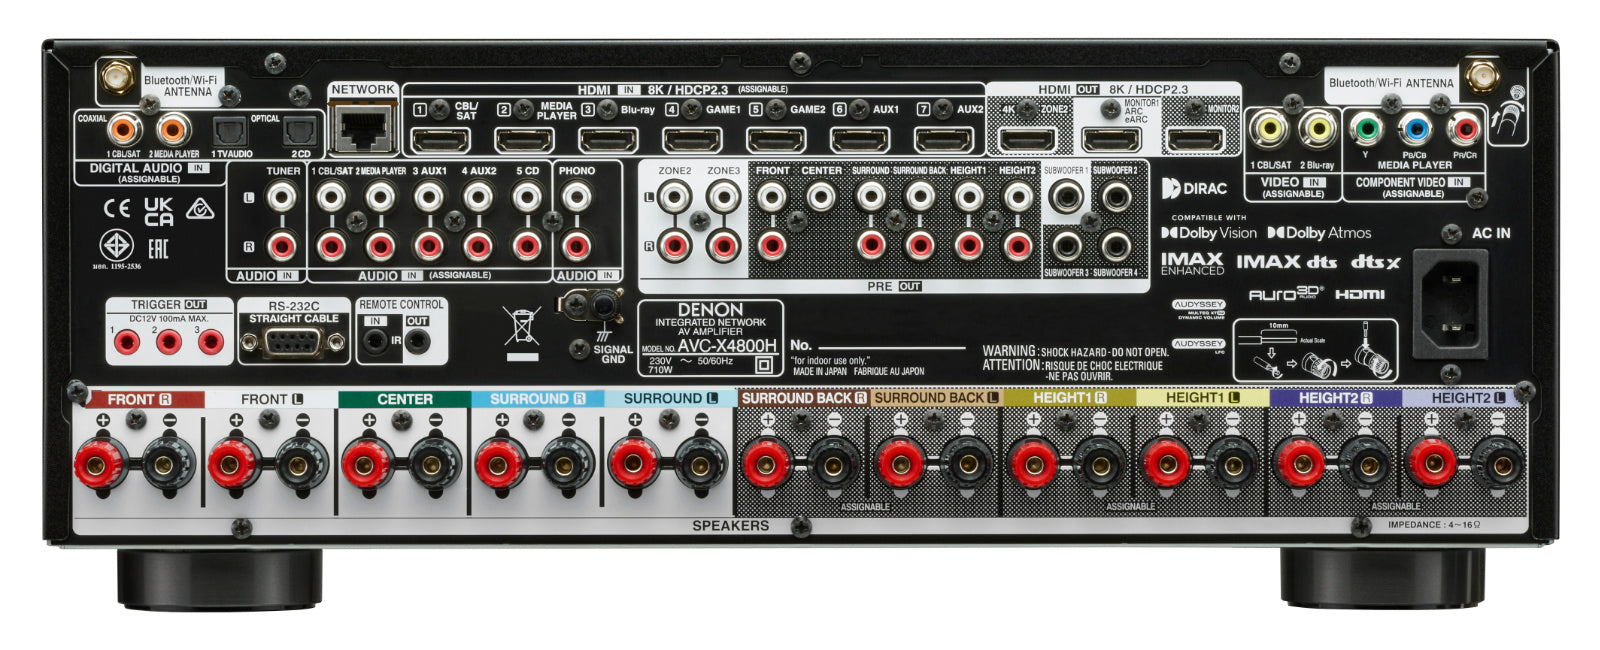 Denon AVC-X4800H 9.4-channel AV amplifier